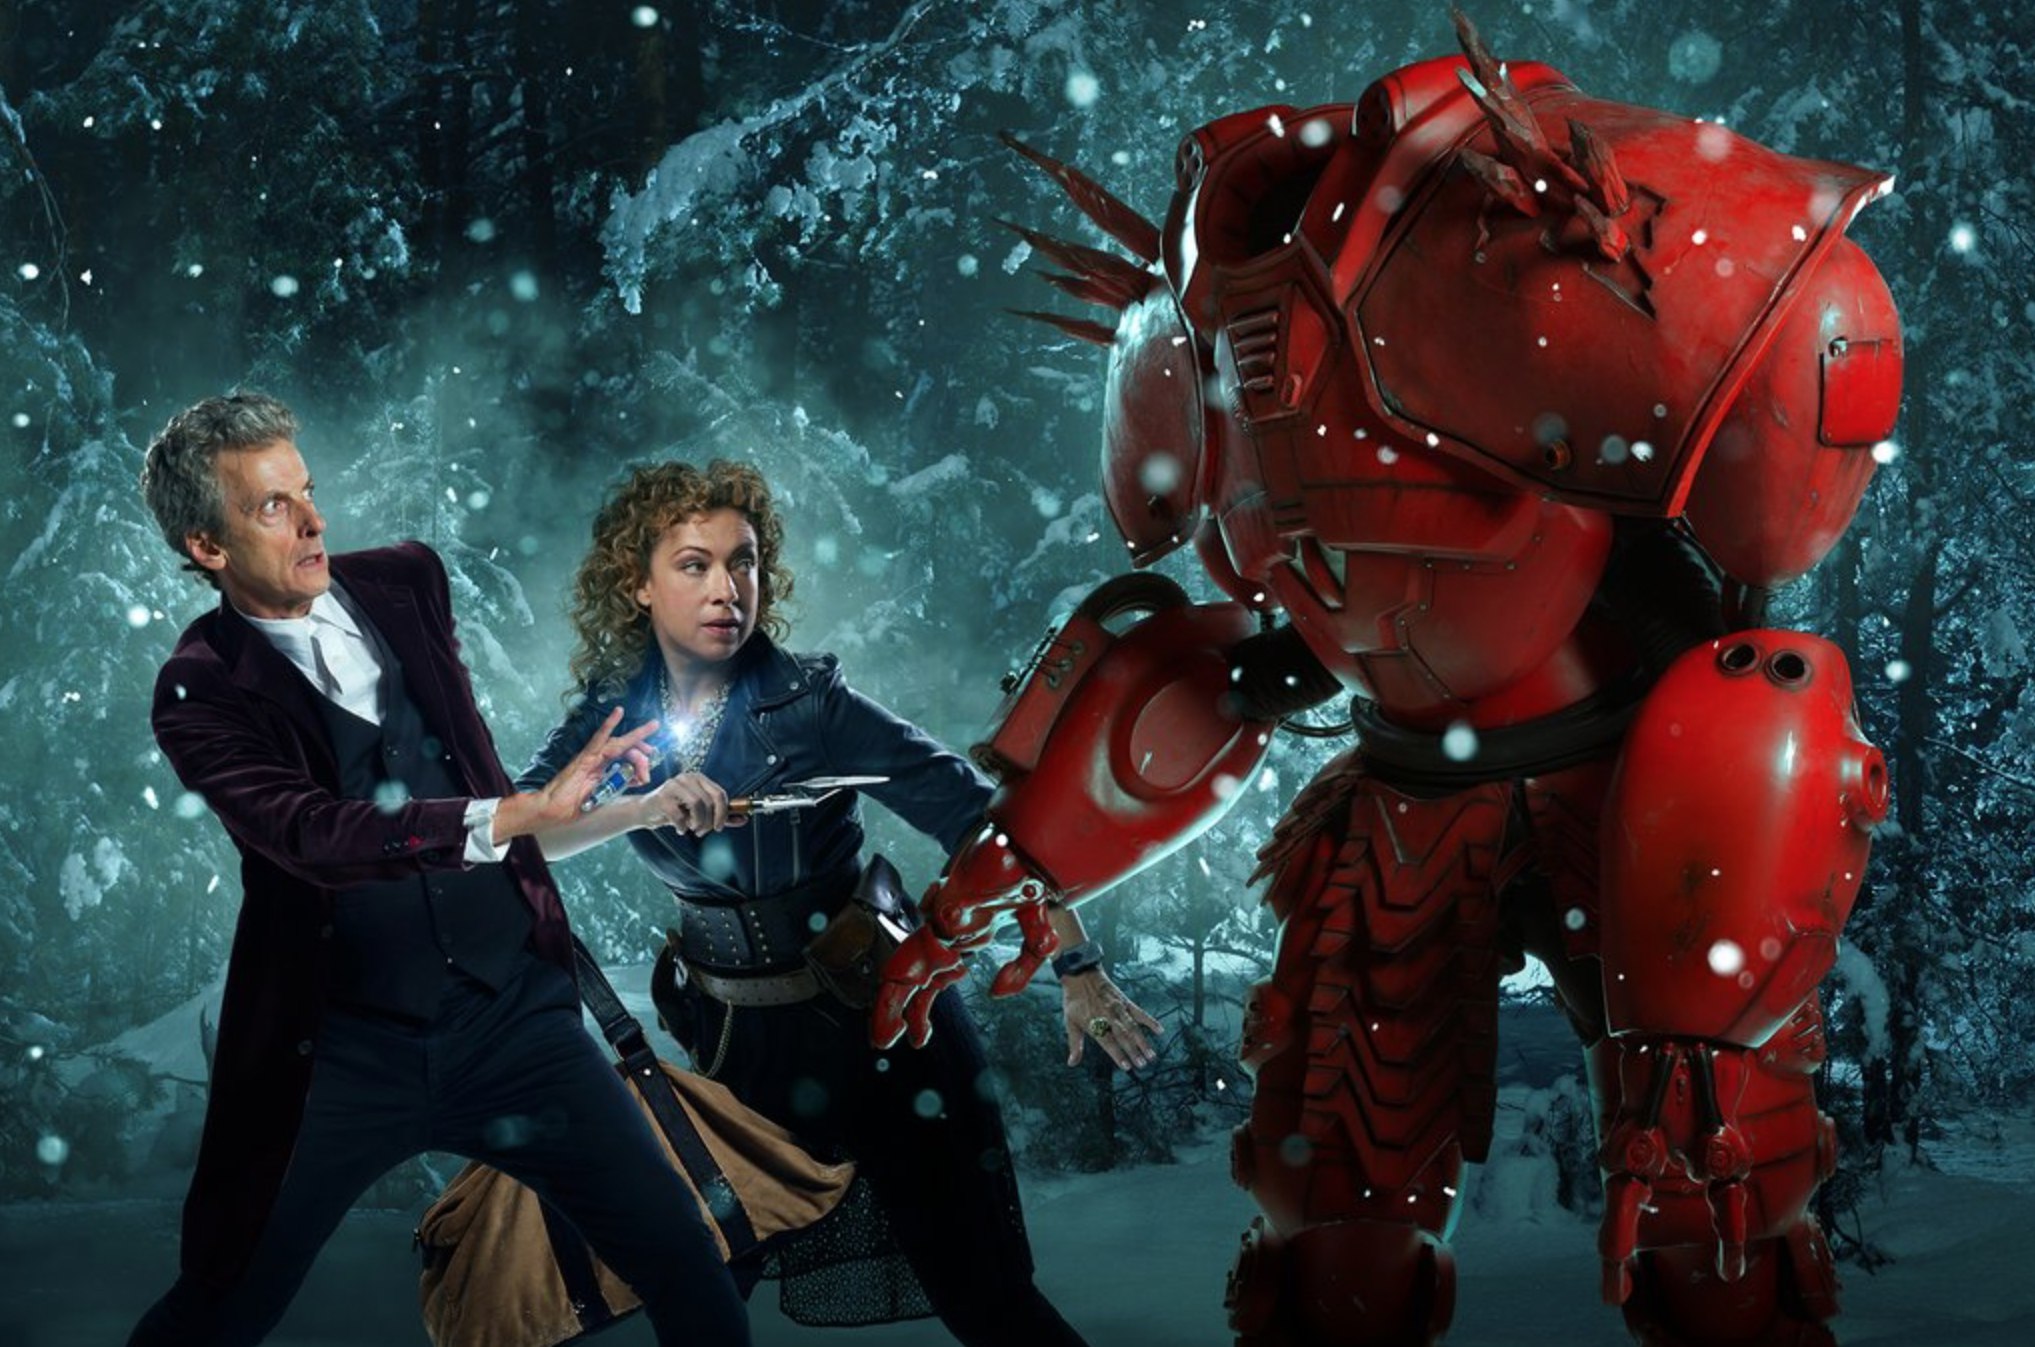 Doctor Who Christmas special 2015 - Доктор Кто рождественский спецвыпуск 2015